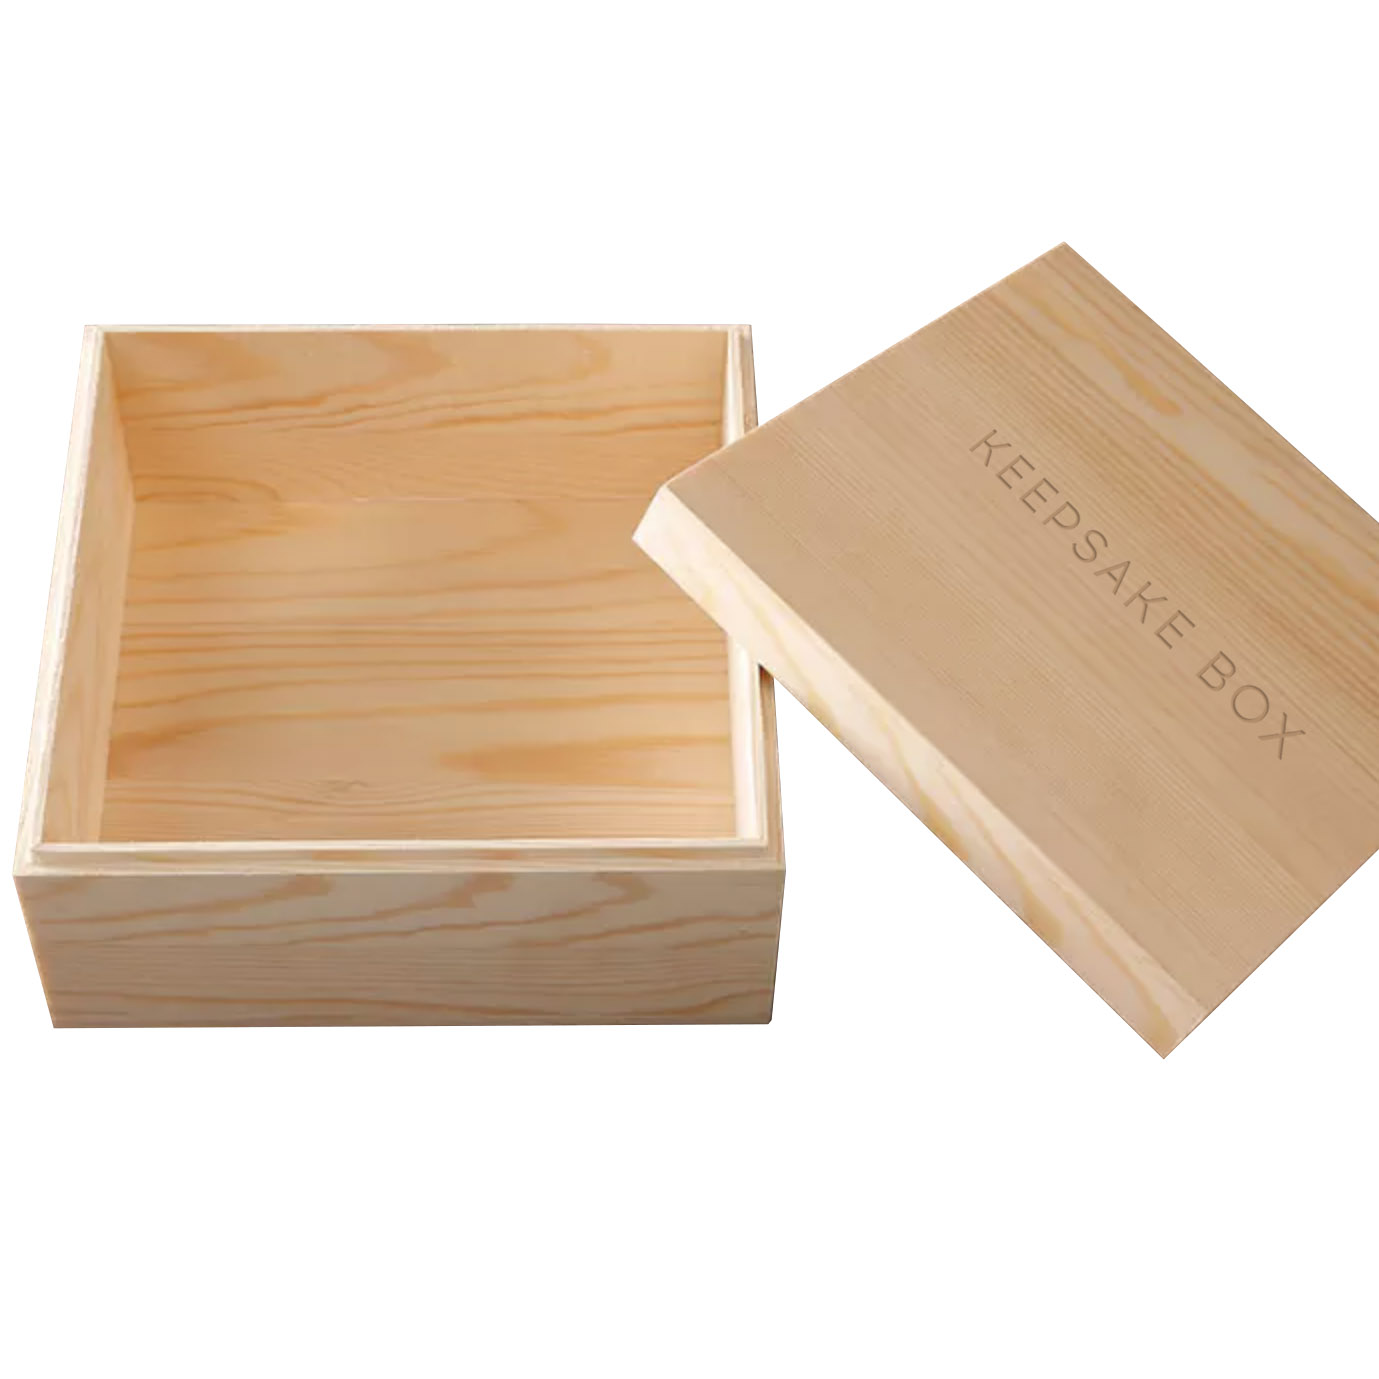 Bespoke Small Keepsake Box